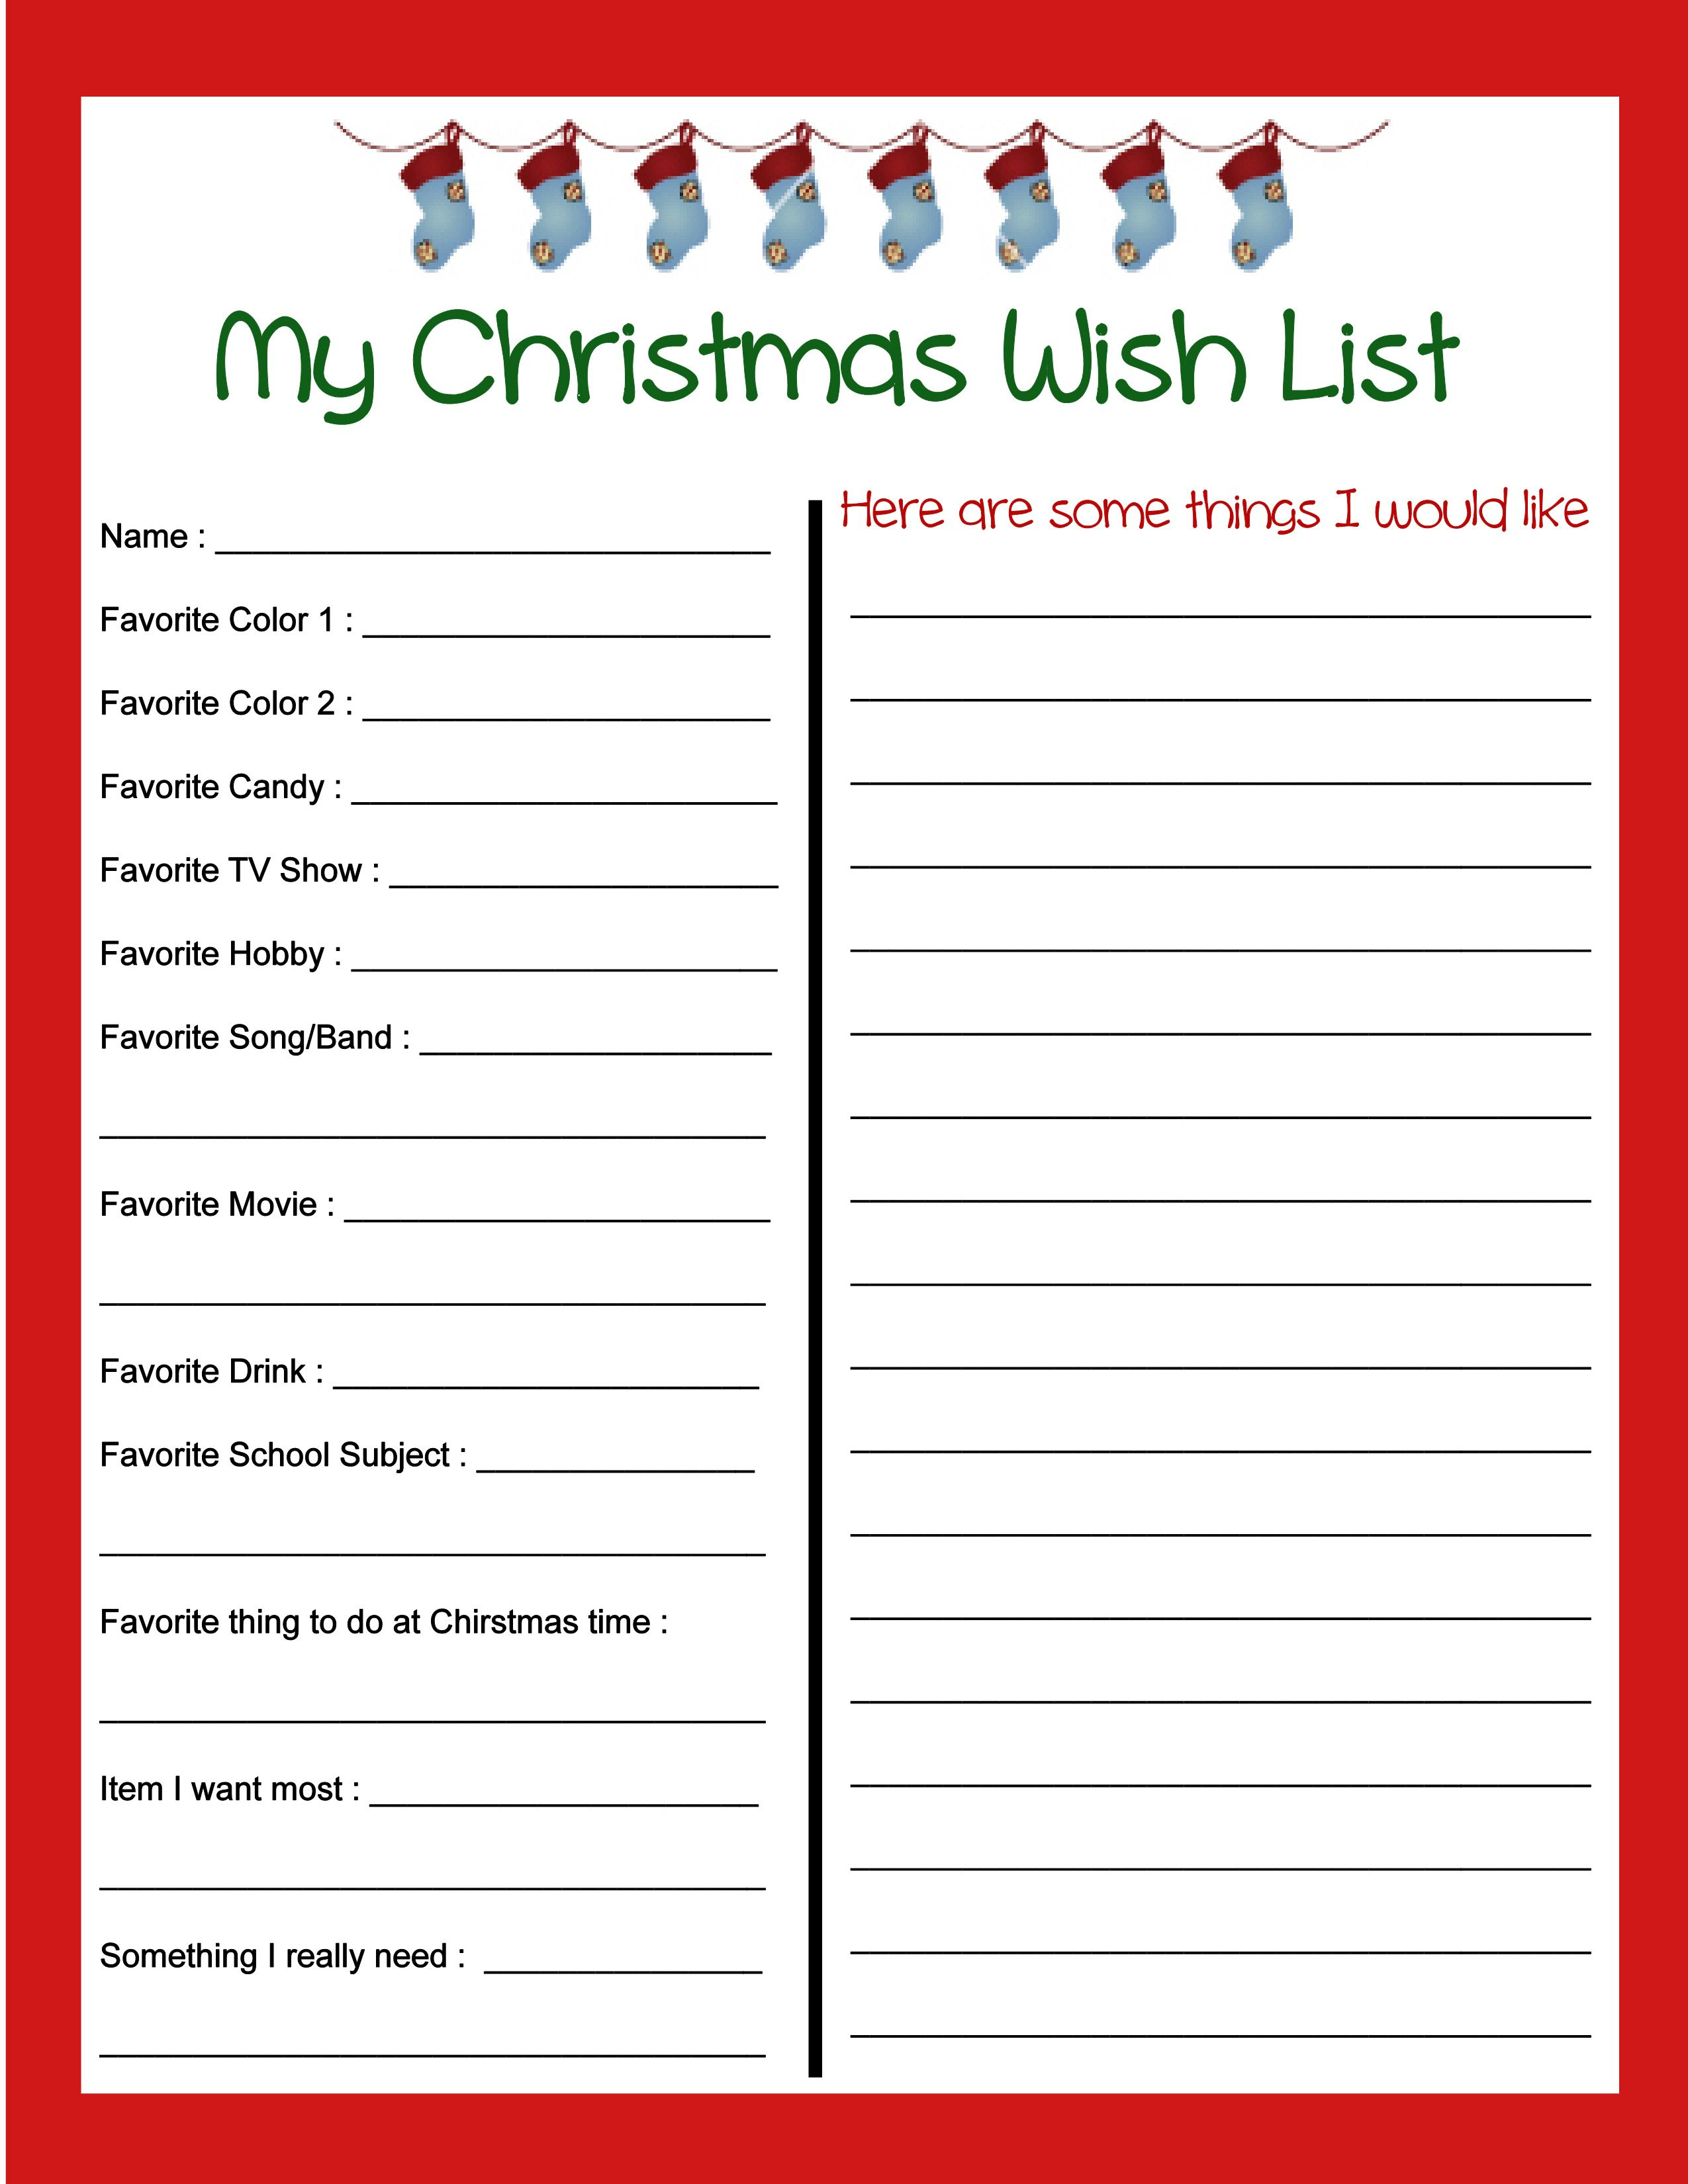 Pinbecky Stout On Christmas!!! | Pinterest | Christmas - Free Printable Christmas List